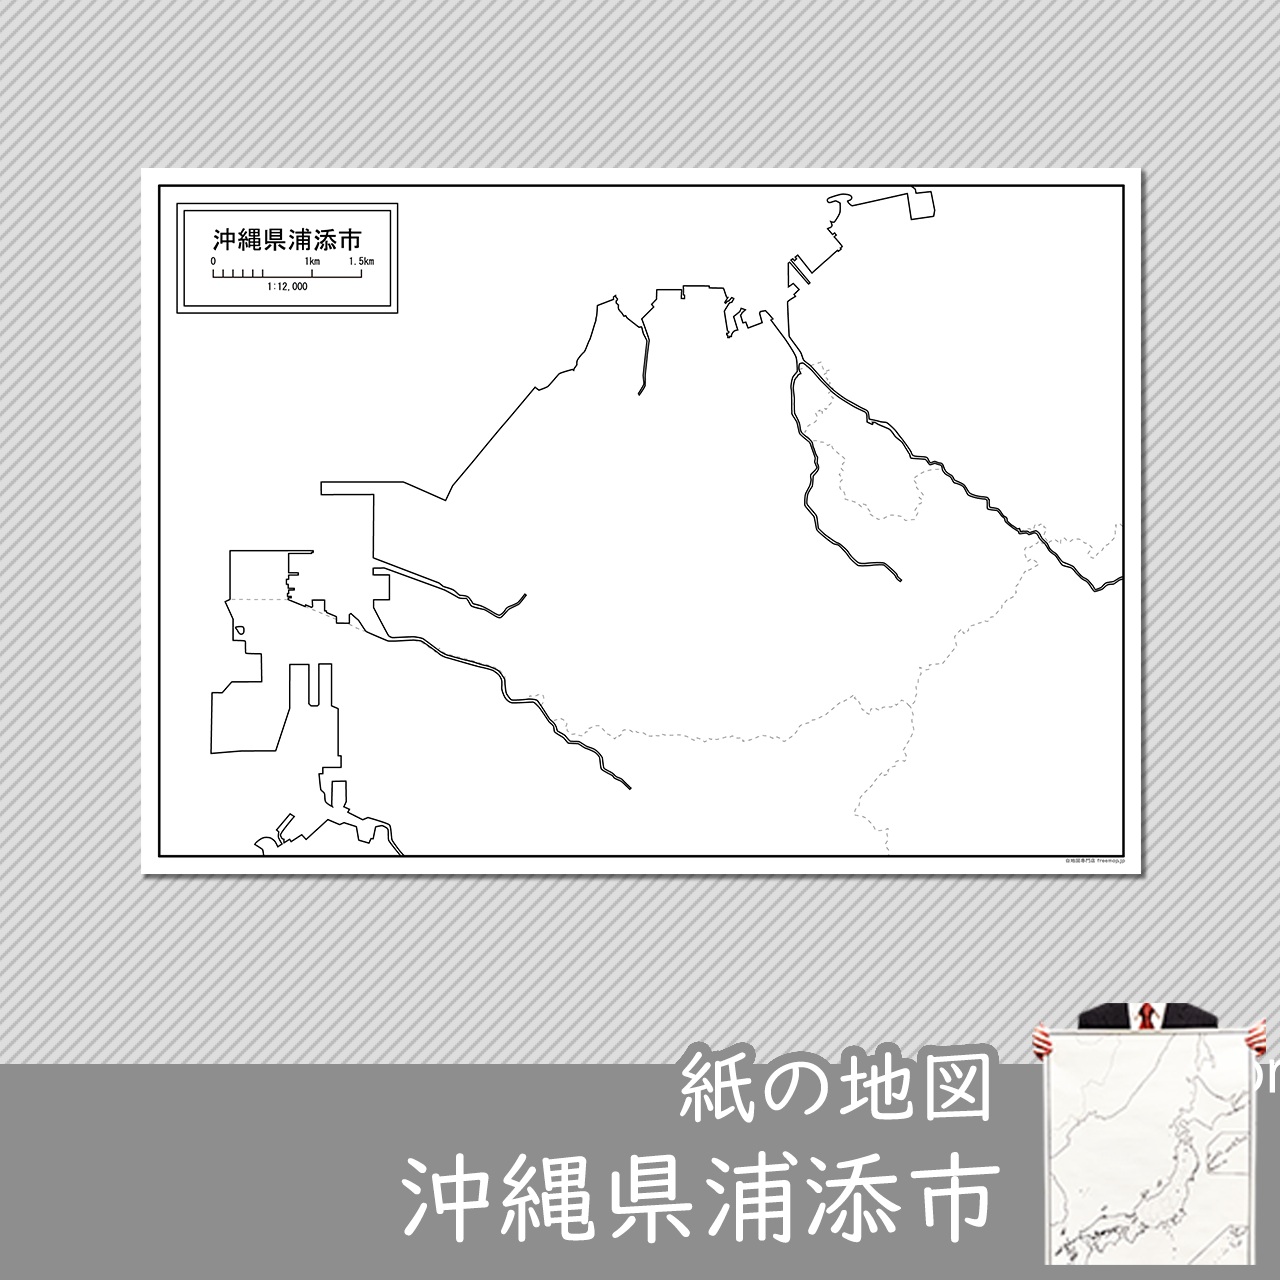 浦添市の紙の白地図のサムネイル